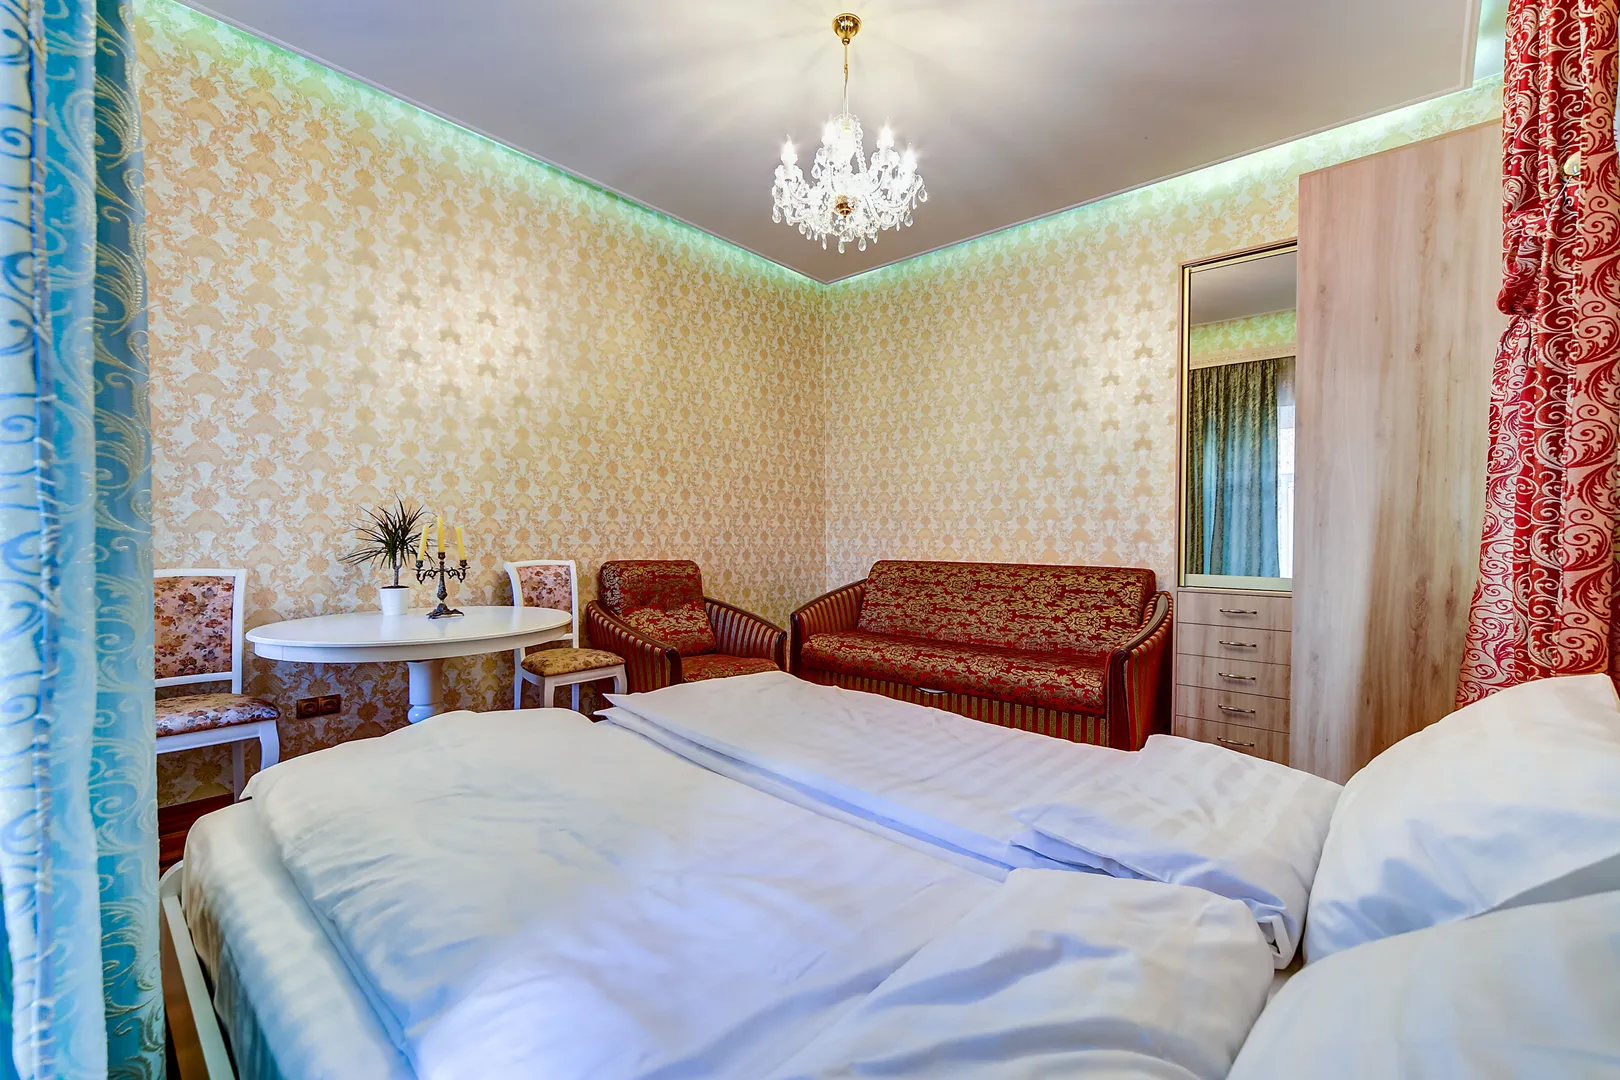 Диван раскладывается в полноценное двухспальное место для гостей.